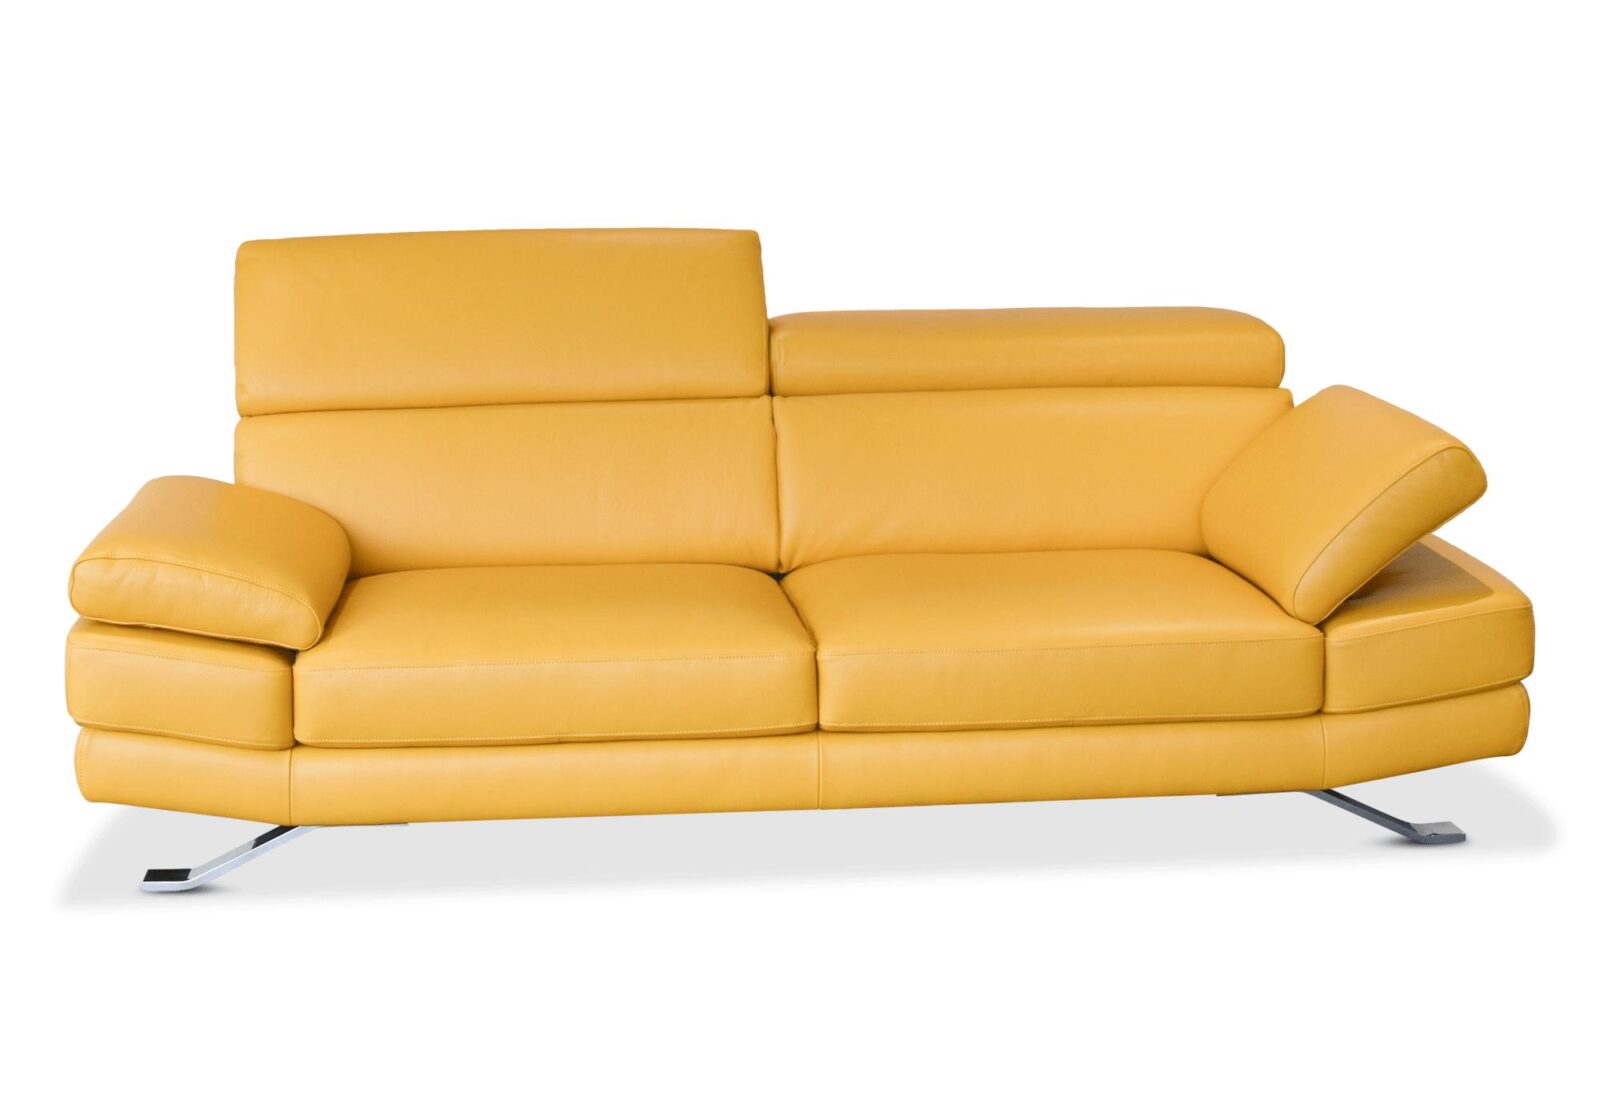 3er Sofa Sam mehrfach verstellbar. Bezug: Leder. Farbe: Gelb. Erhältlich bei Möbel Gallati.